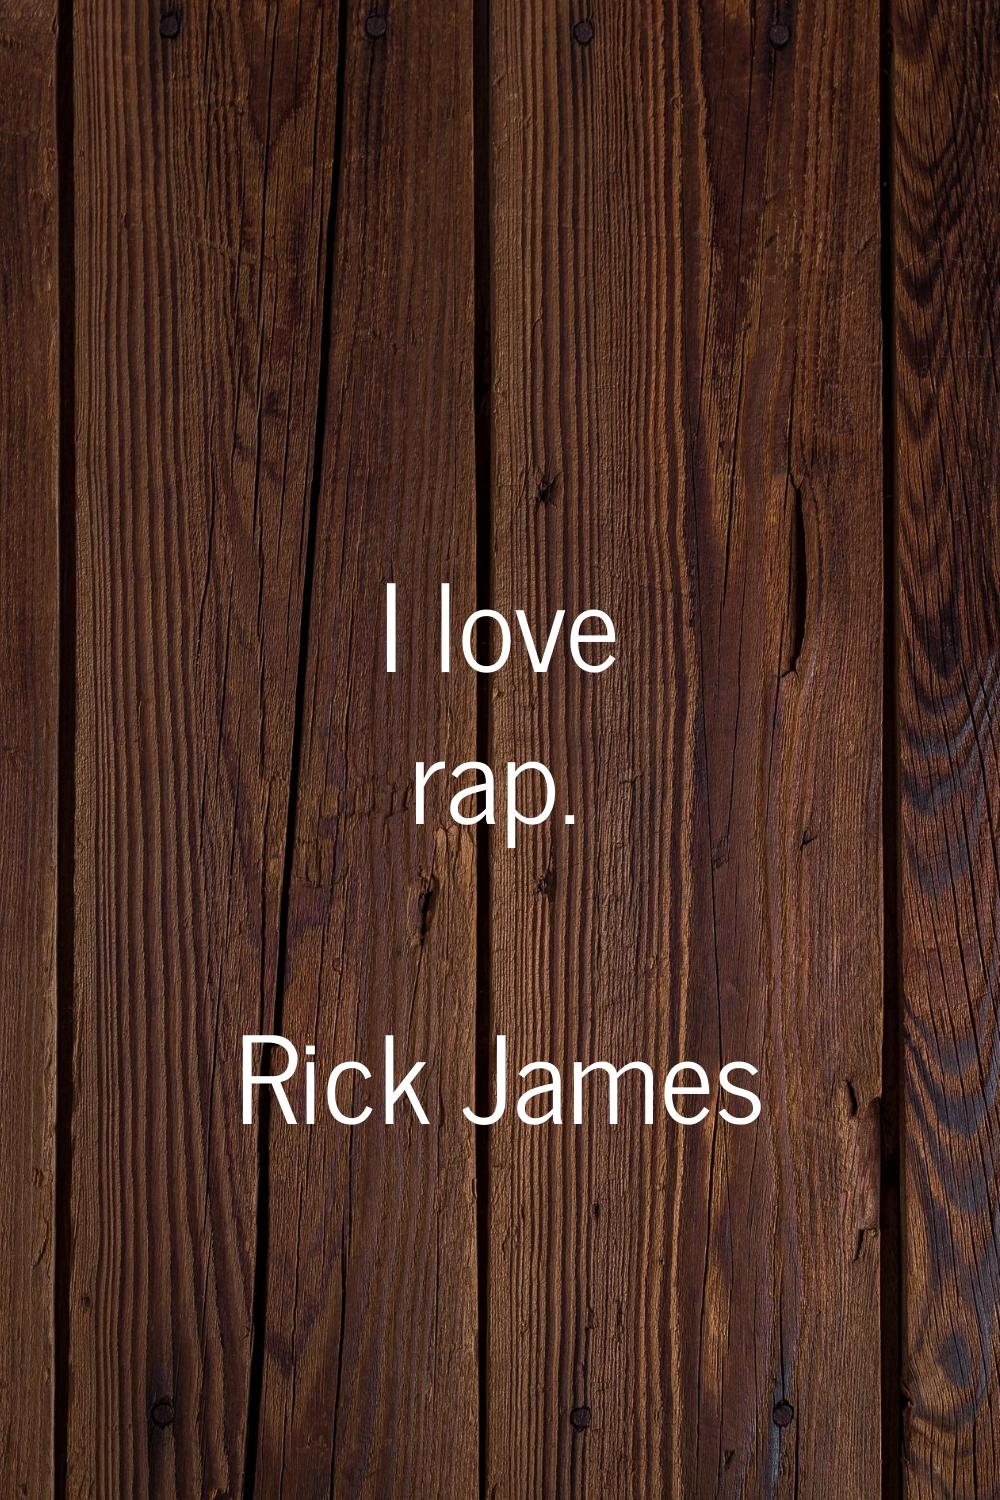 I love rap.